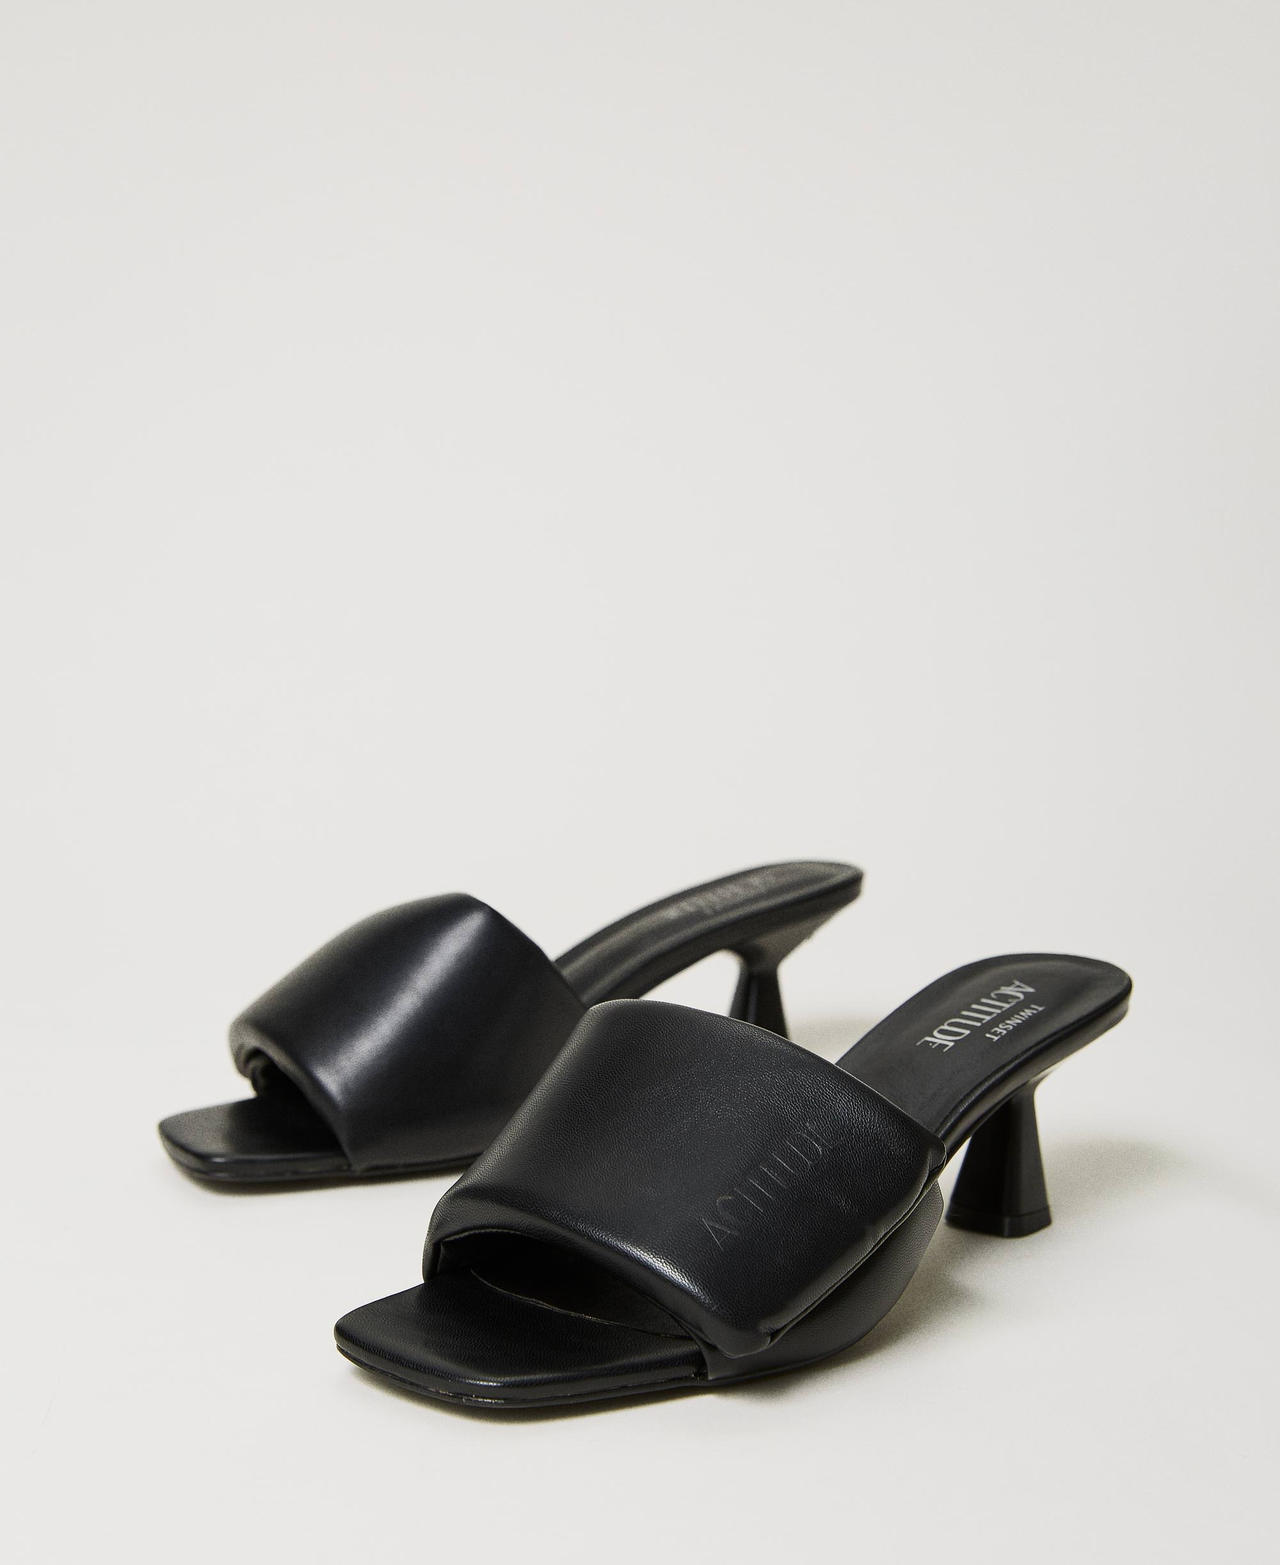 Sandales mules avec bande matelassée Noir Femme 241ACP020-02